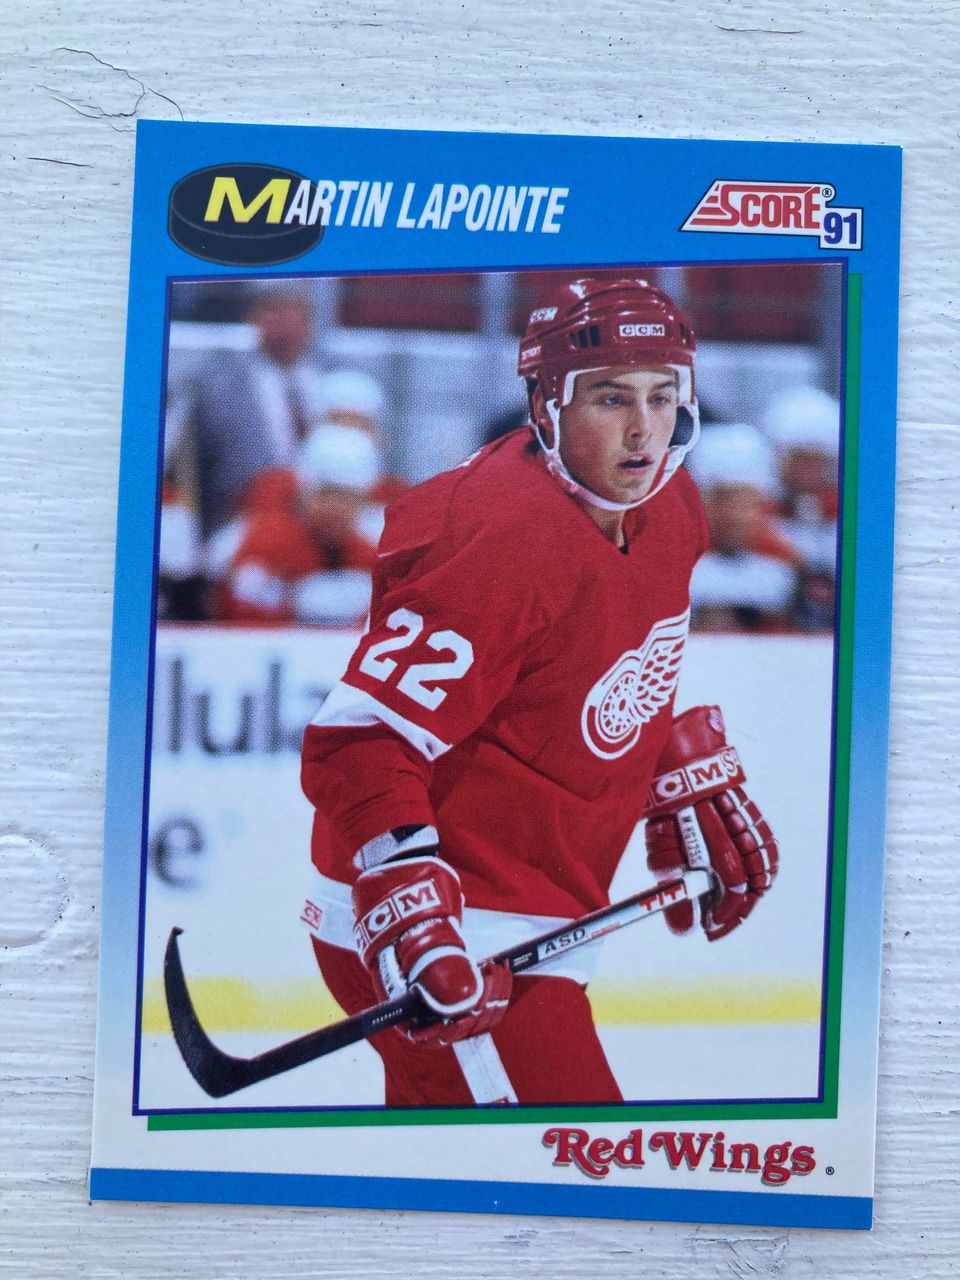 Jääkiekkokortti Score91 Martin Lapointe MINT